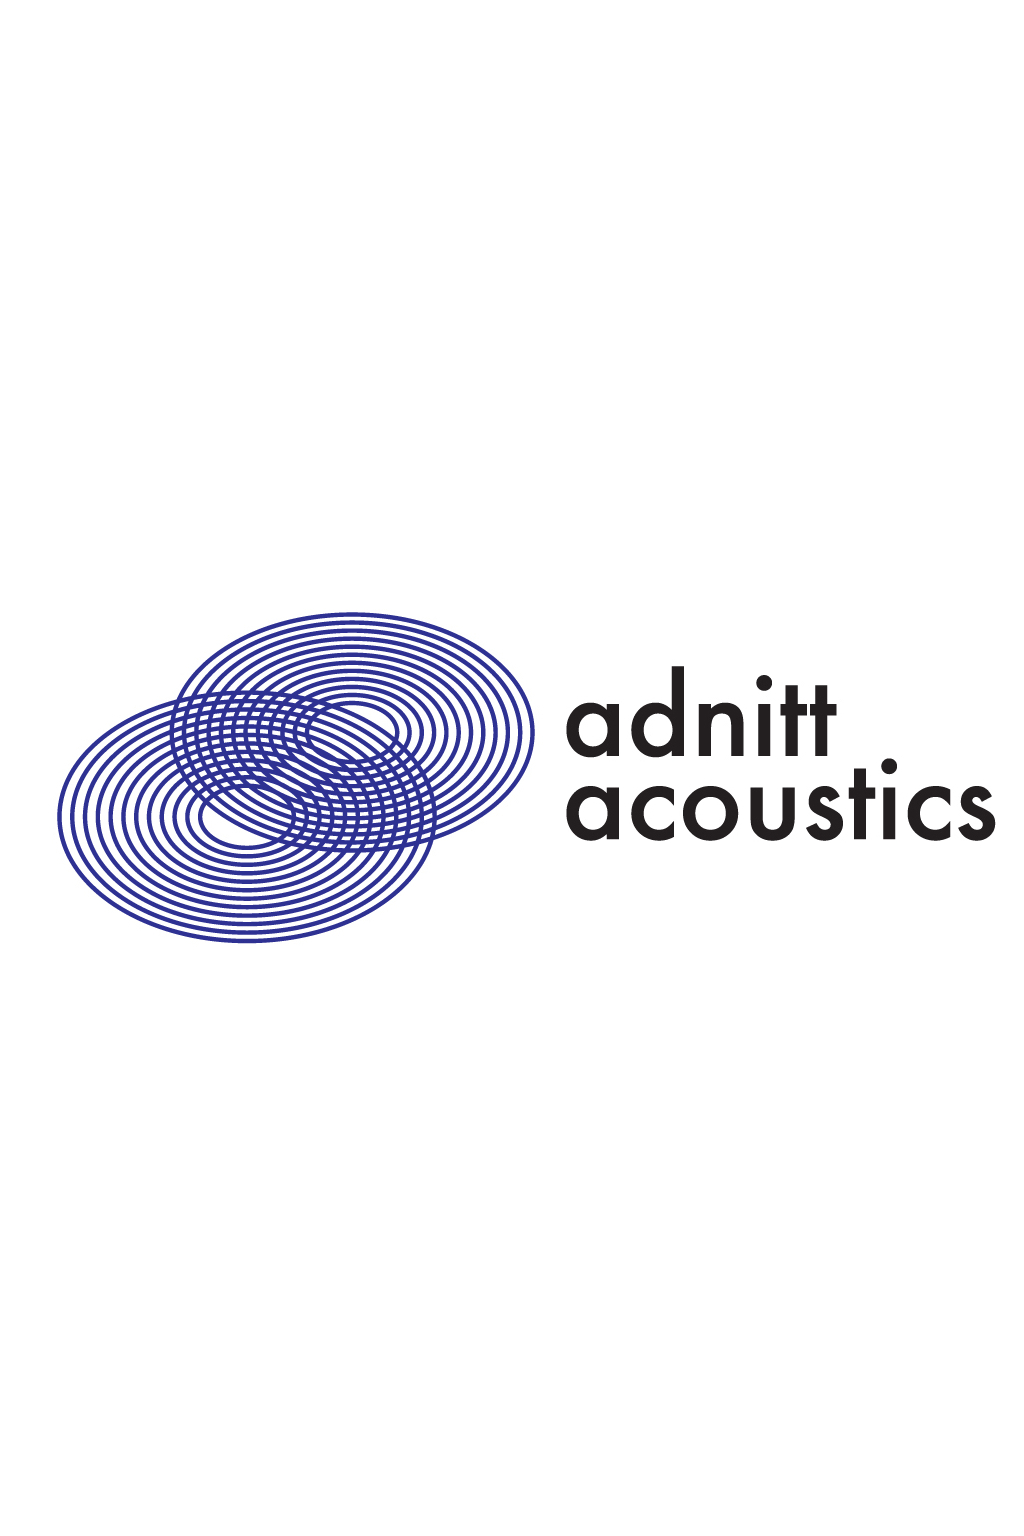 Adnitt Acoustics UK